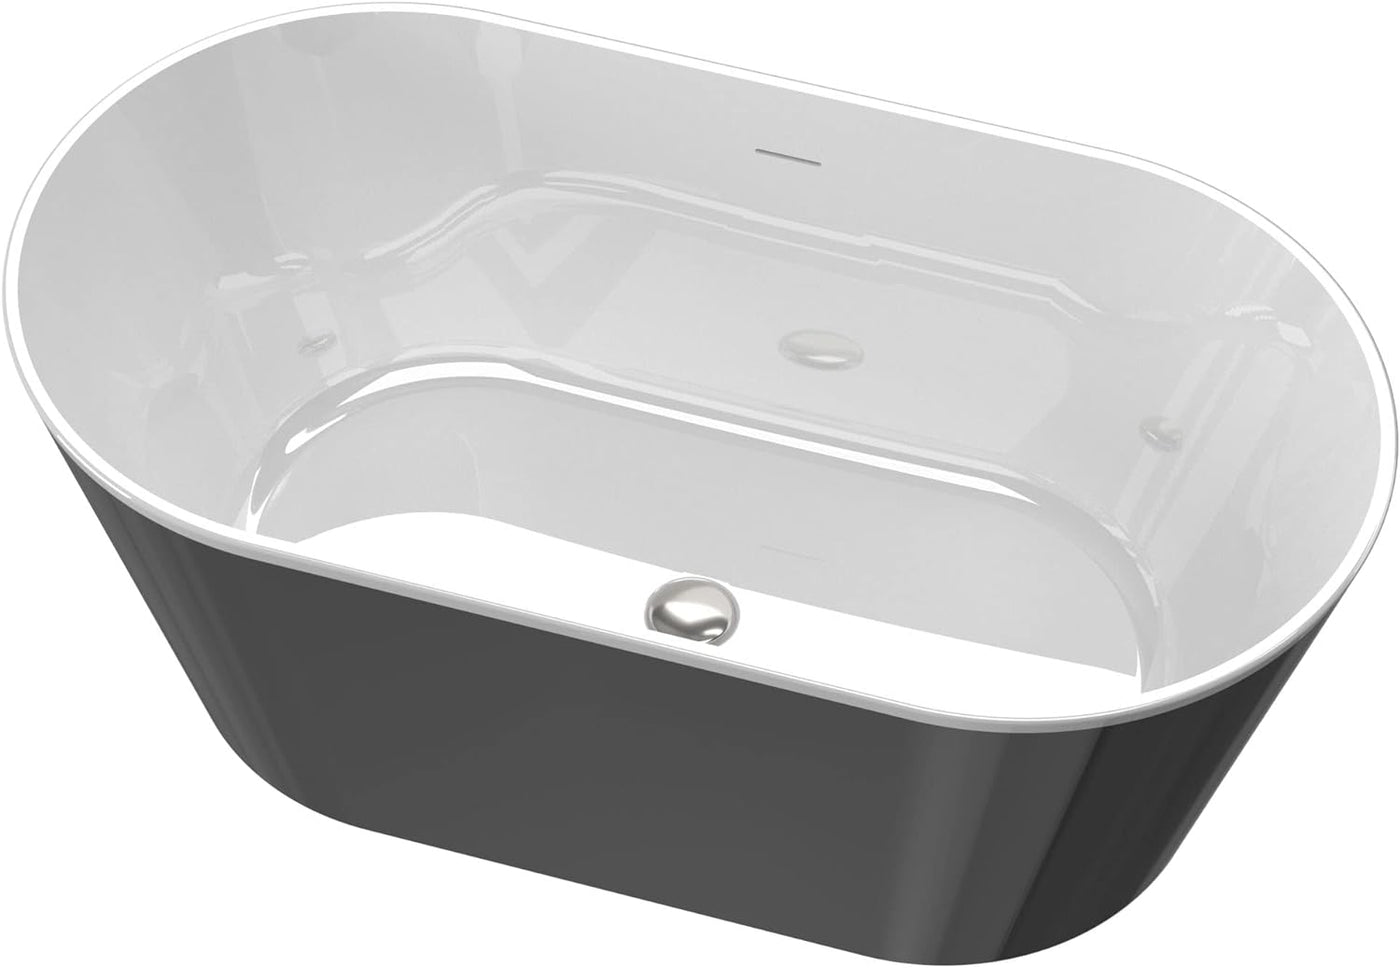 60" Oval Freestanding Bathtub,Modern Acrylic Soaking Bath Tub,Black Finish - $480